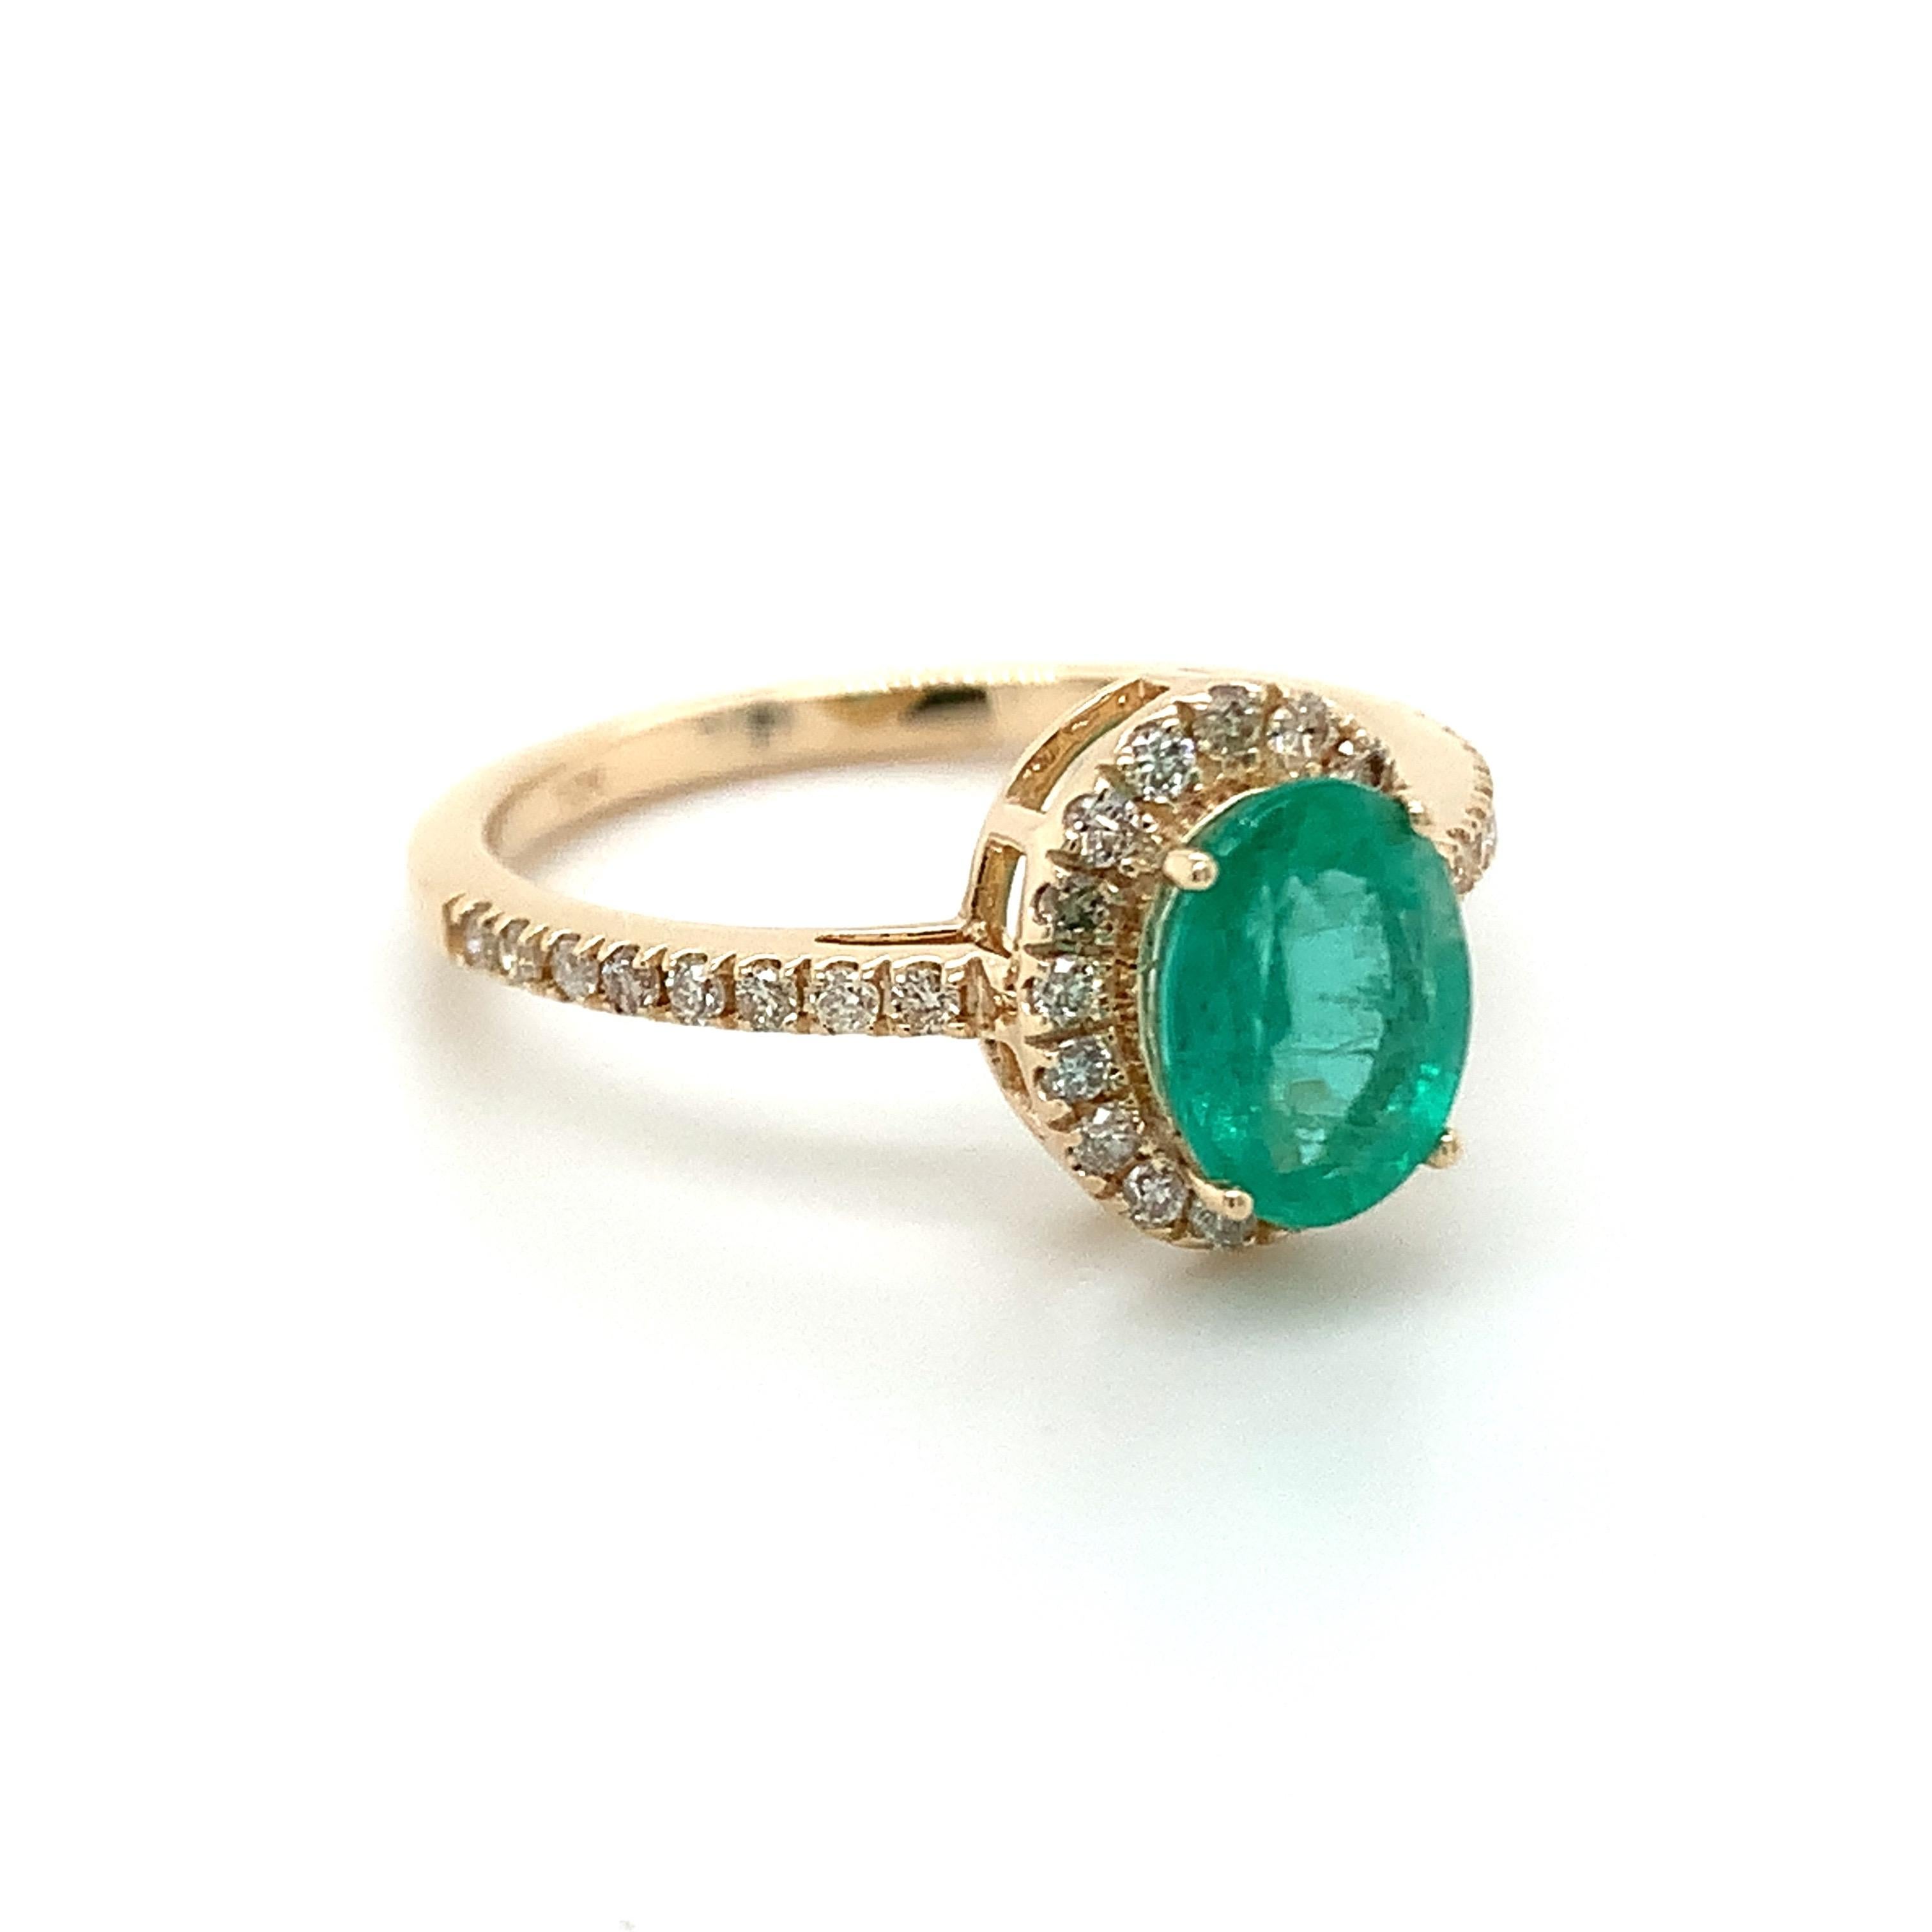 Oval geschliffener Smaragd Edelstein schön in einem 10K Gelbgold Ring mit natürlichen Diamanten gefertigt.

Mit einem leuchtenden grünen Farbton. Der Geburtsstein für den Mai ist ein Symbol für neues Wachstum im Frühling. Entdecken Sie eine große